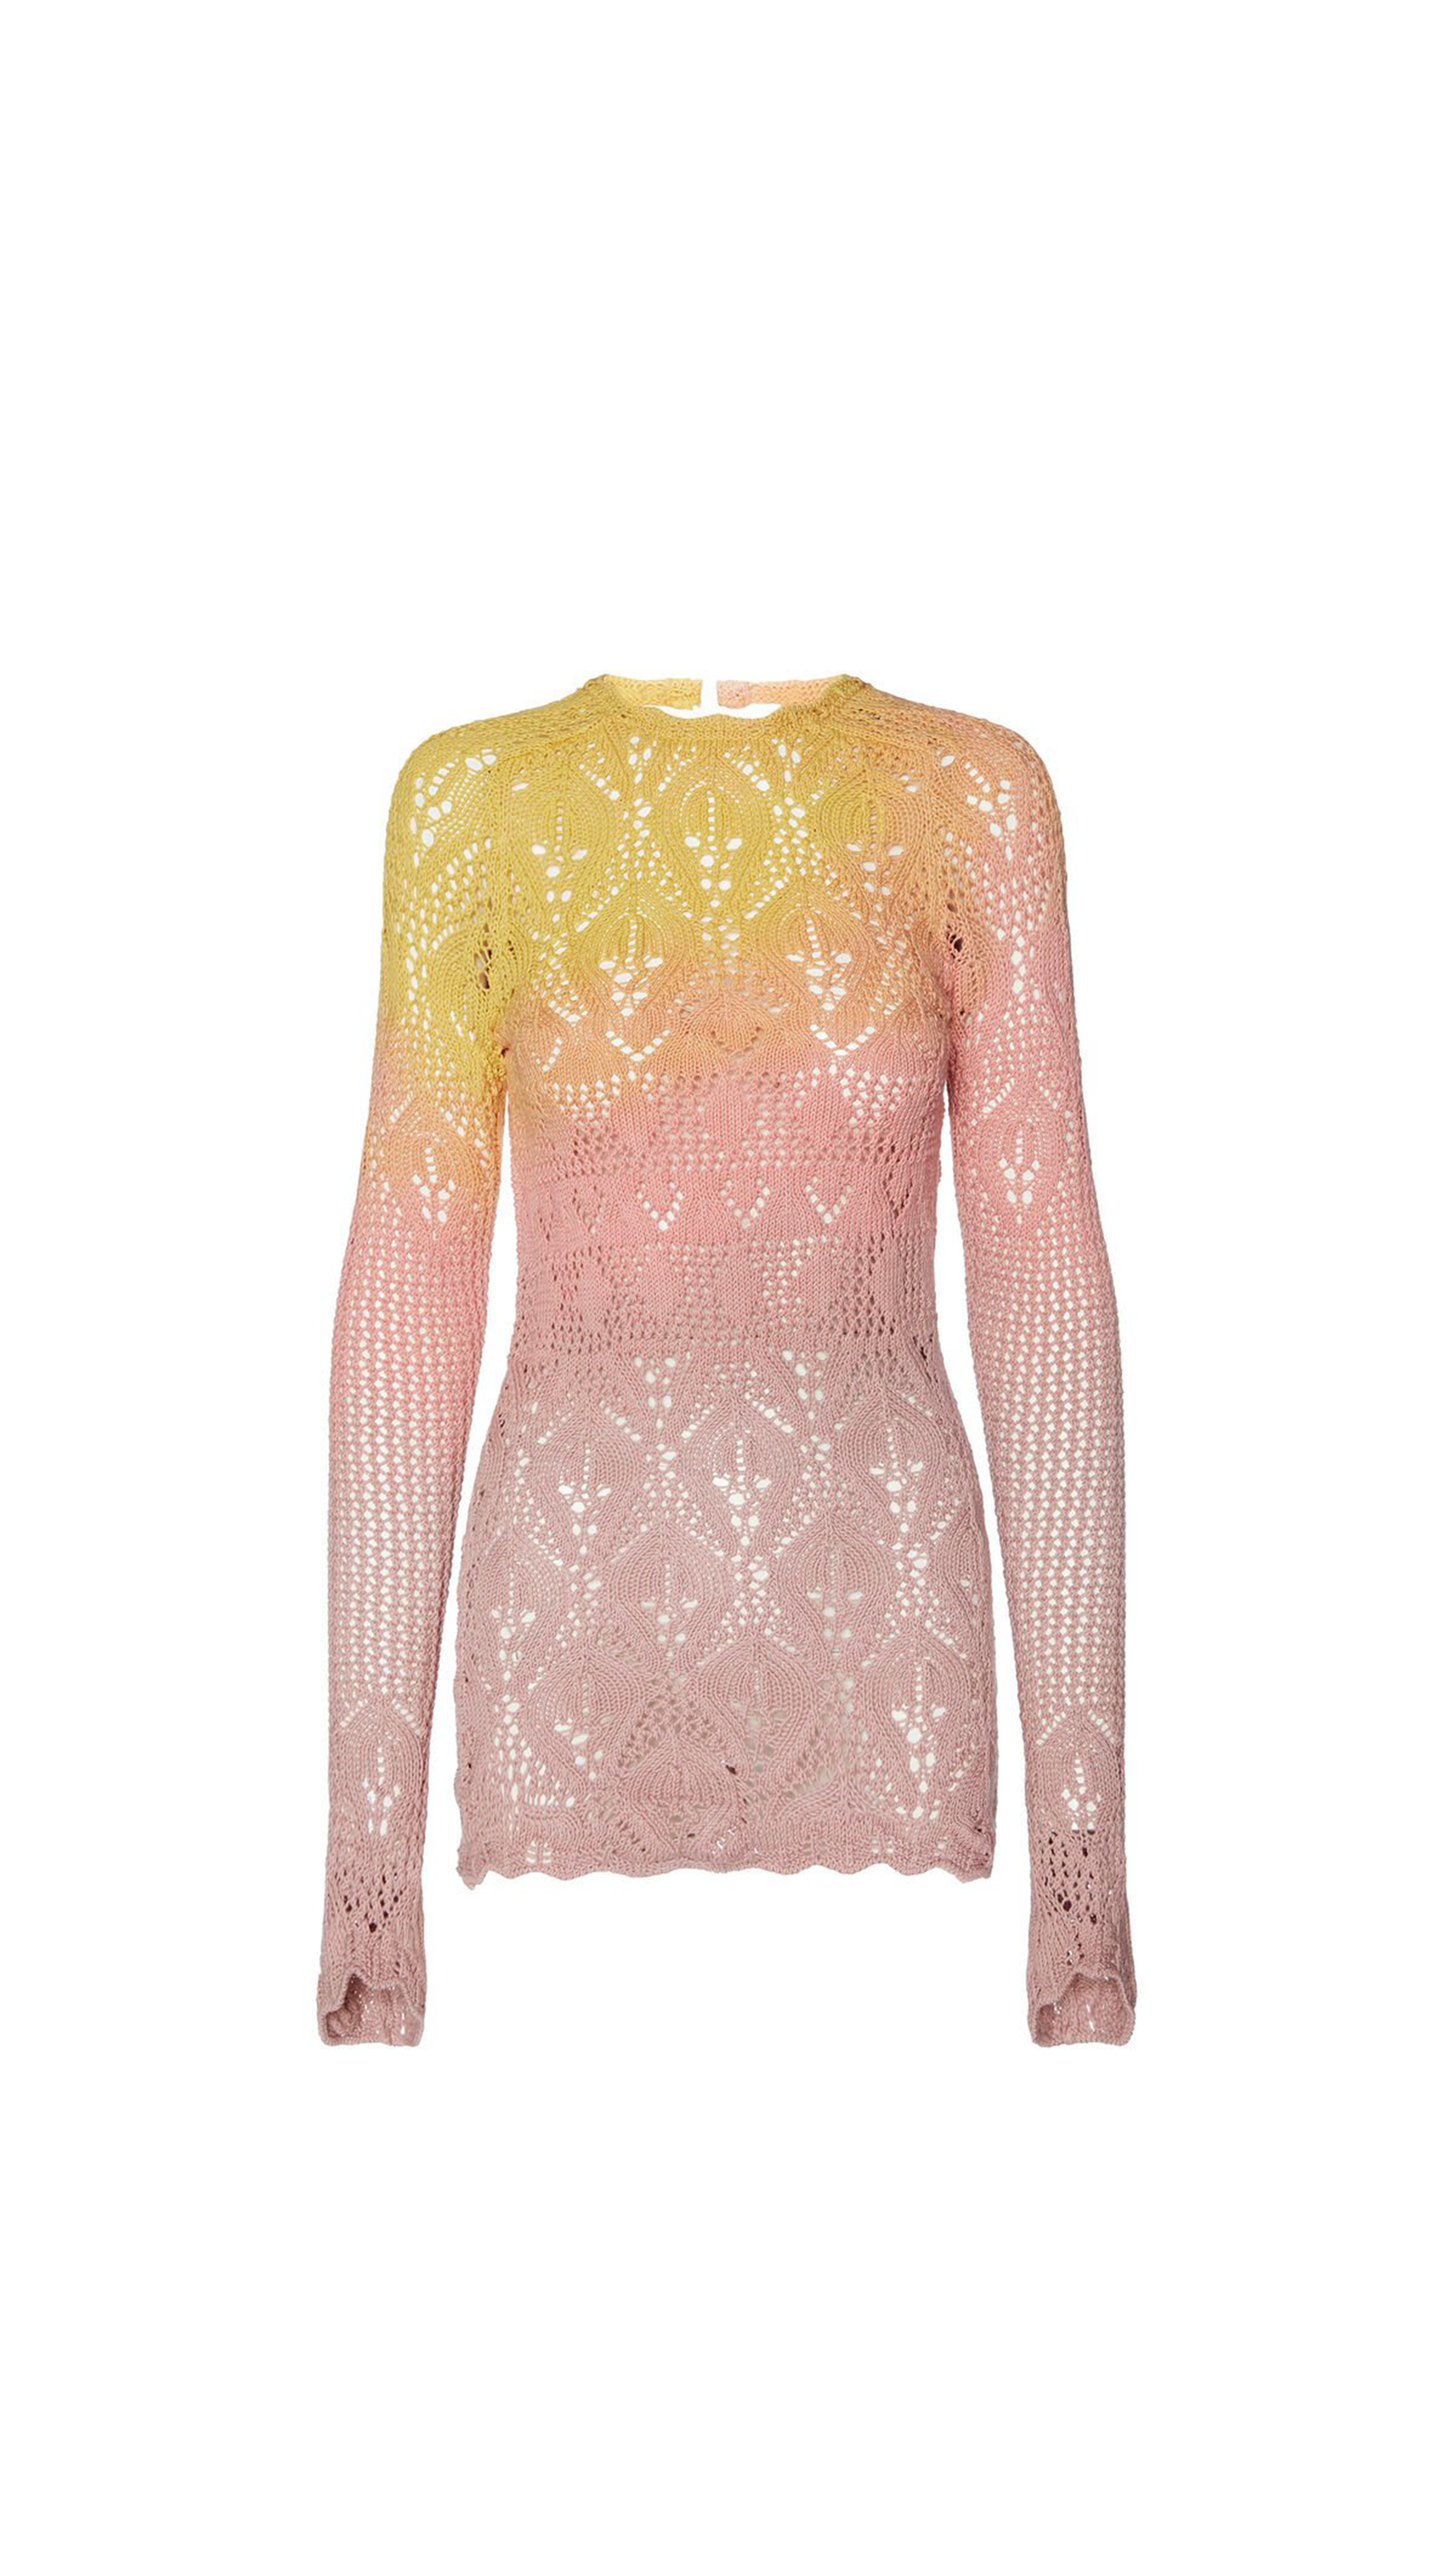 Asymmetric Tie-dye Mini Dress in Cotton Crochet - Pink / Yellow